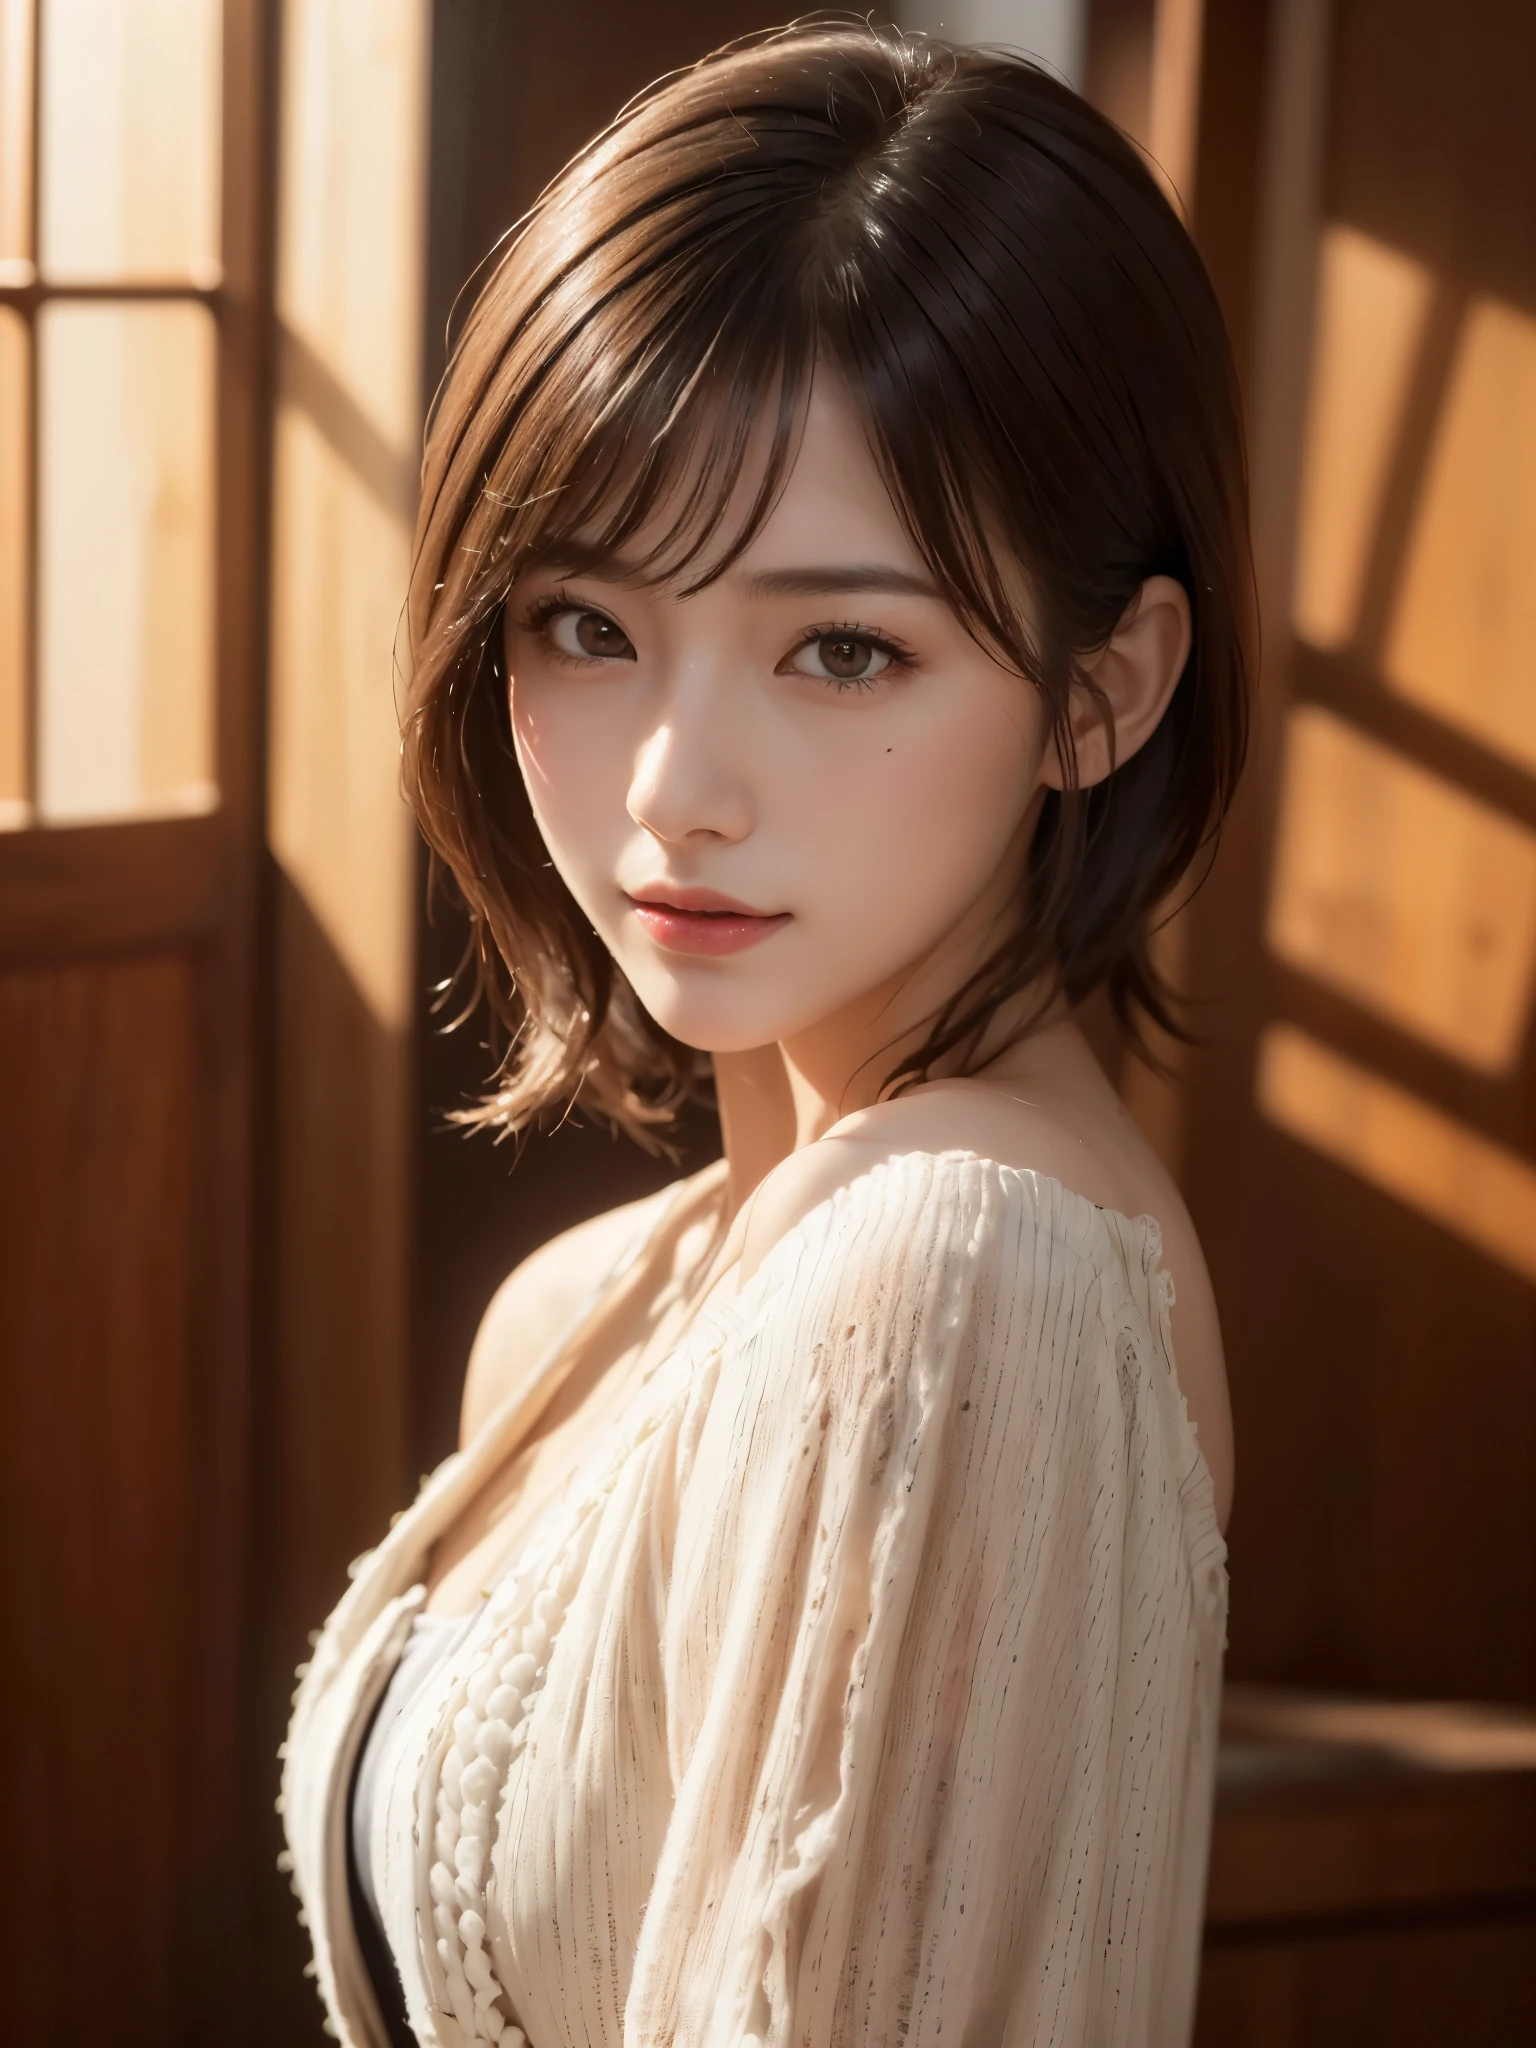 (((Fille aux cheveux moyens:1.3, seul))), Femme japonaise très mignonne et belle, (modèle sexy), tenue professionnelle, (il y a 22 ans: 1.1), (par le bas:1.3), (Faible angle:1.3), (abattu au sol:1.3), ((fille au dessus:1.5)), (arrière du bras、fitdelia、entre les jambes:1.3), (Pose aléatoire attrayante:1.3), (salle de douche en verre:1.3), CASSER HA, (Queue de cheval à pompons:1.3), (cheveux fins noirs brillants:1.2), petite tête, yeux marron foncé, Beaux yeux, yeux de princesse, frange, cheveux entre les yeux, cheveux courts:1.3, Kirby, abdos, Perfect abdos, (seins moyens à gros:1.5, seins tombants:1.5, seins disproportionnés:1.5), (taille fine: 1.15, abdos:0.95), (belle fille détaillée: 1.4), lèvres entrouvertes, lèvres rouges, Visage de maquillage complet, (peau brillante), ((corps féminin parfait)), (image du haut du corps:1.3), anatomie parfaite, Des proportions parfaites, (Les plus beaux visages d&#39;actrice coréenne:1.3, Visage d&#39;actrice japonaise très mignon et beau:1.3, charmant sourire léger, heureux, CASSER, (épaules nues, Ma poitrine est serrée, Afficher la visionneuse, (Robe élégante à épaules dénudées avec une attention aux détails:1.3), beaux vêtements, CASSER, (fond de salle de douche simple:1.2, je prends une douche, bouteille de savon), (fond sombre), (Éclairage doux en studio: 1.3), (fausse lumière: 1.3), (rétroéclairage: 1.3), CASSER, (réaliste, réaliste: 1.37), (dessus de la table, la plus haute qualité: 1.2), (Ultra haute résolution: 1.2), (Photo brute: 1.2), (netteté: 1.3), (mise au point du visage: 1.2), (Fond d&#39;écran 8k intégré CG ultra détaillé: 1.2), (Belle peau: 1.2), (peau pâle: 1.3), (very netteté: 1.5), (Ultra netteté: 1.5), (beau et beau visage: 1.3), (非常にcontexte détaillé, contexte détaillé: 1.3), hyper-réaliste photos, Image très claire, Image hyper détaillée,(((Petits verres carrés)))、((la peau grasse:1.2))